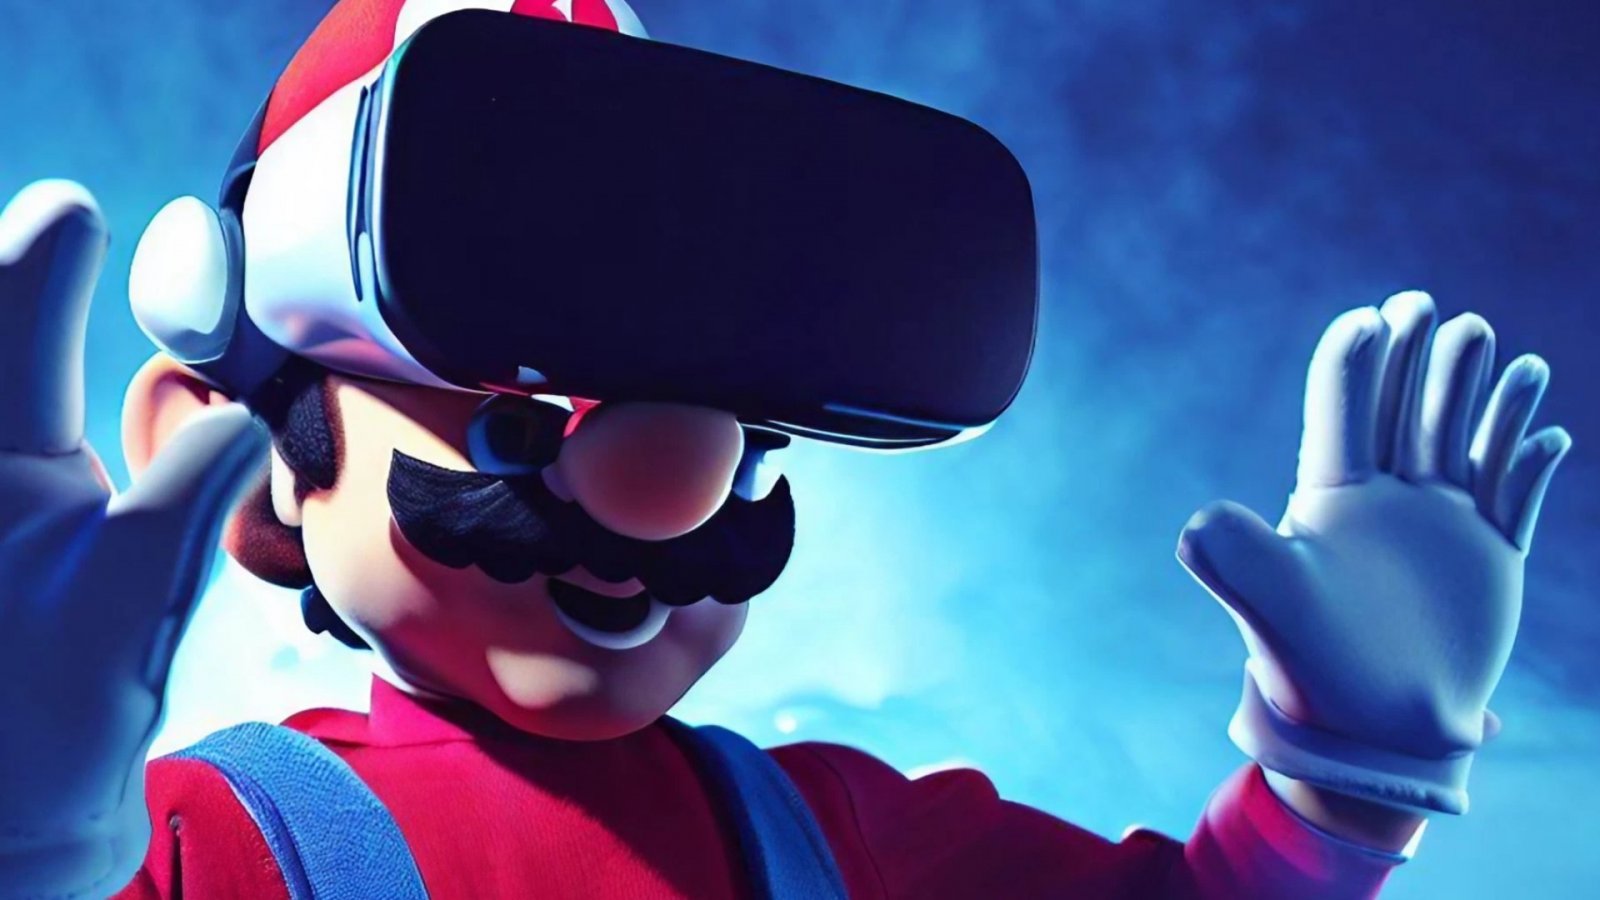 Nintendo e Google lavorano a un visore per la realtà virtuale, stando a un rumor